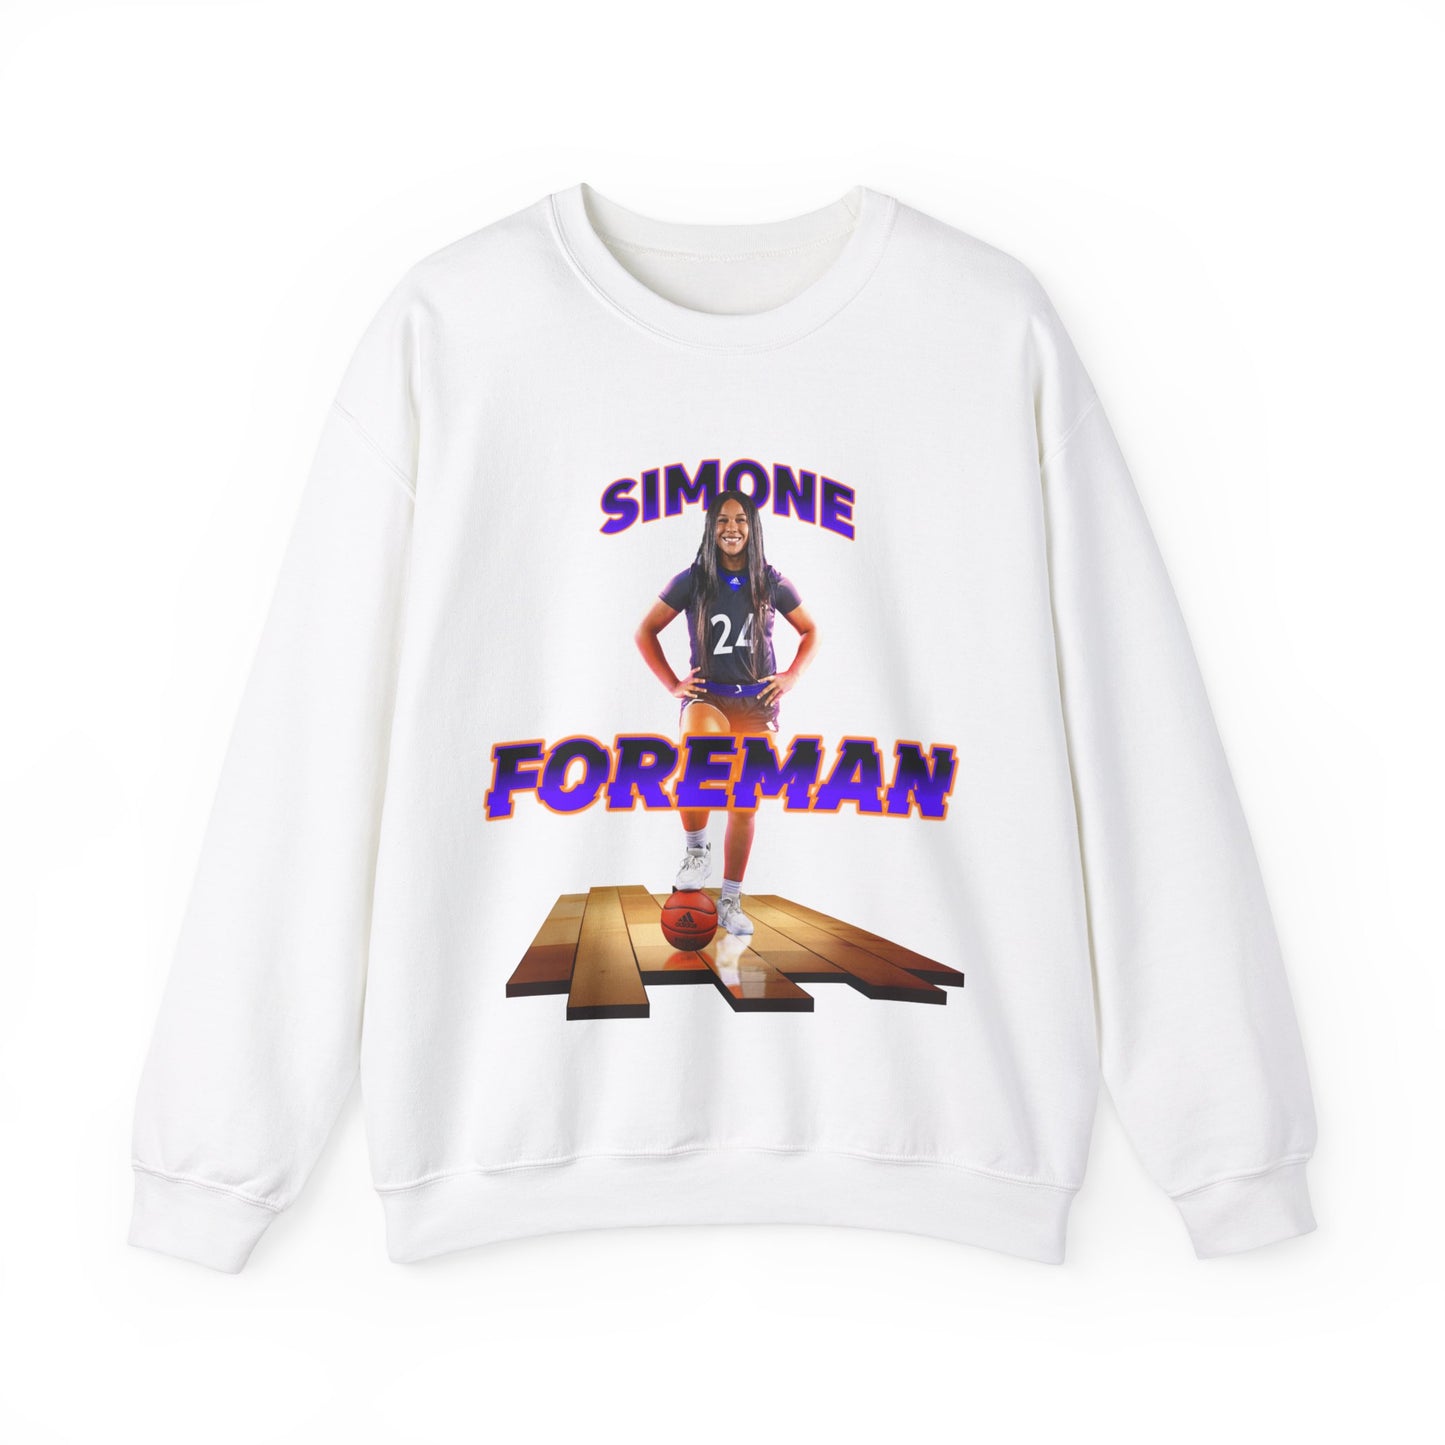 Simone Foreman: Essential Crewneck